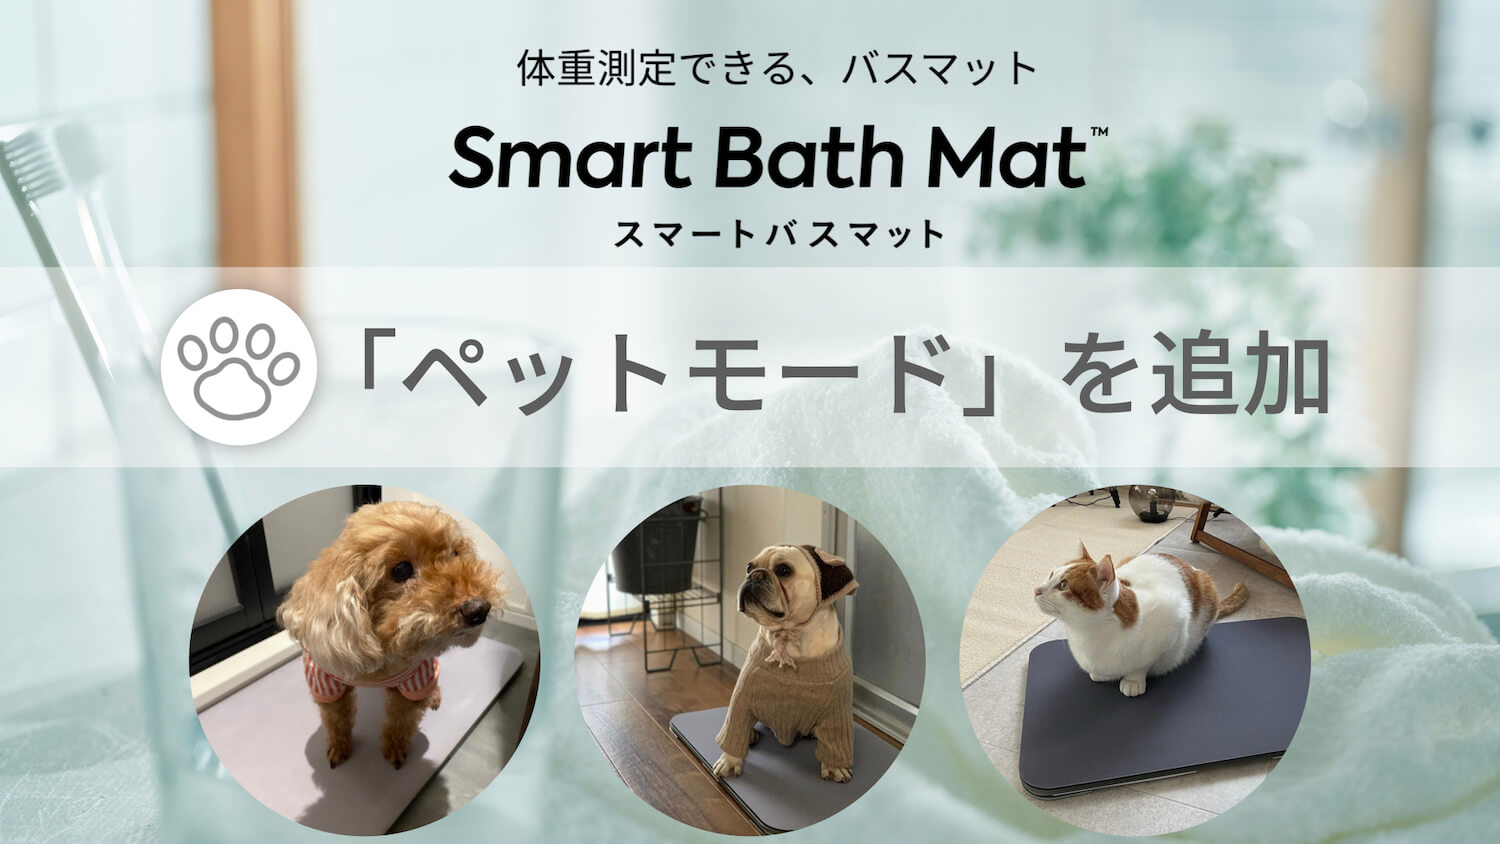 猫や犬の体重測定ができるペットモード機能を搭載 by スマートバスマット